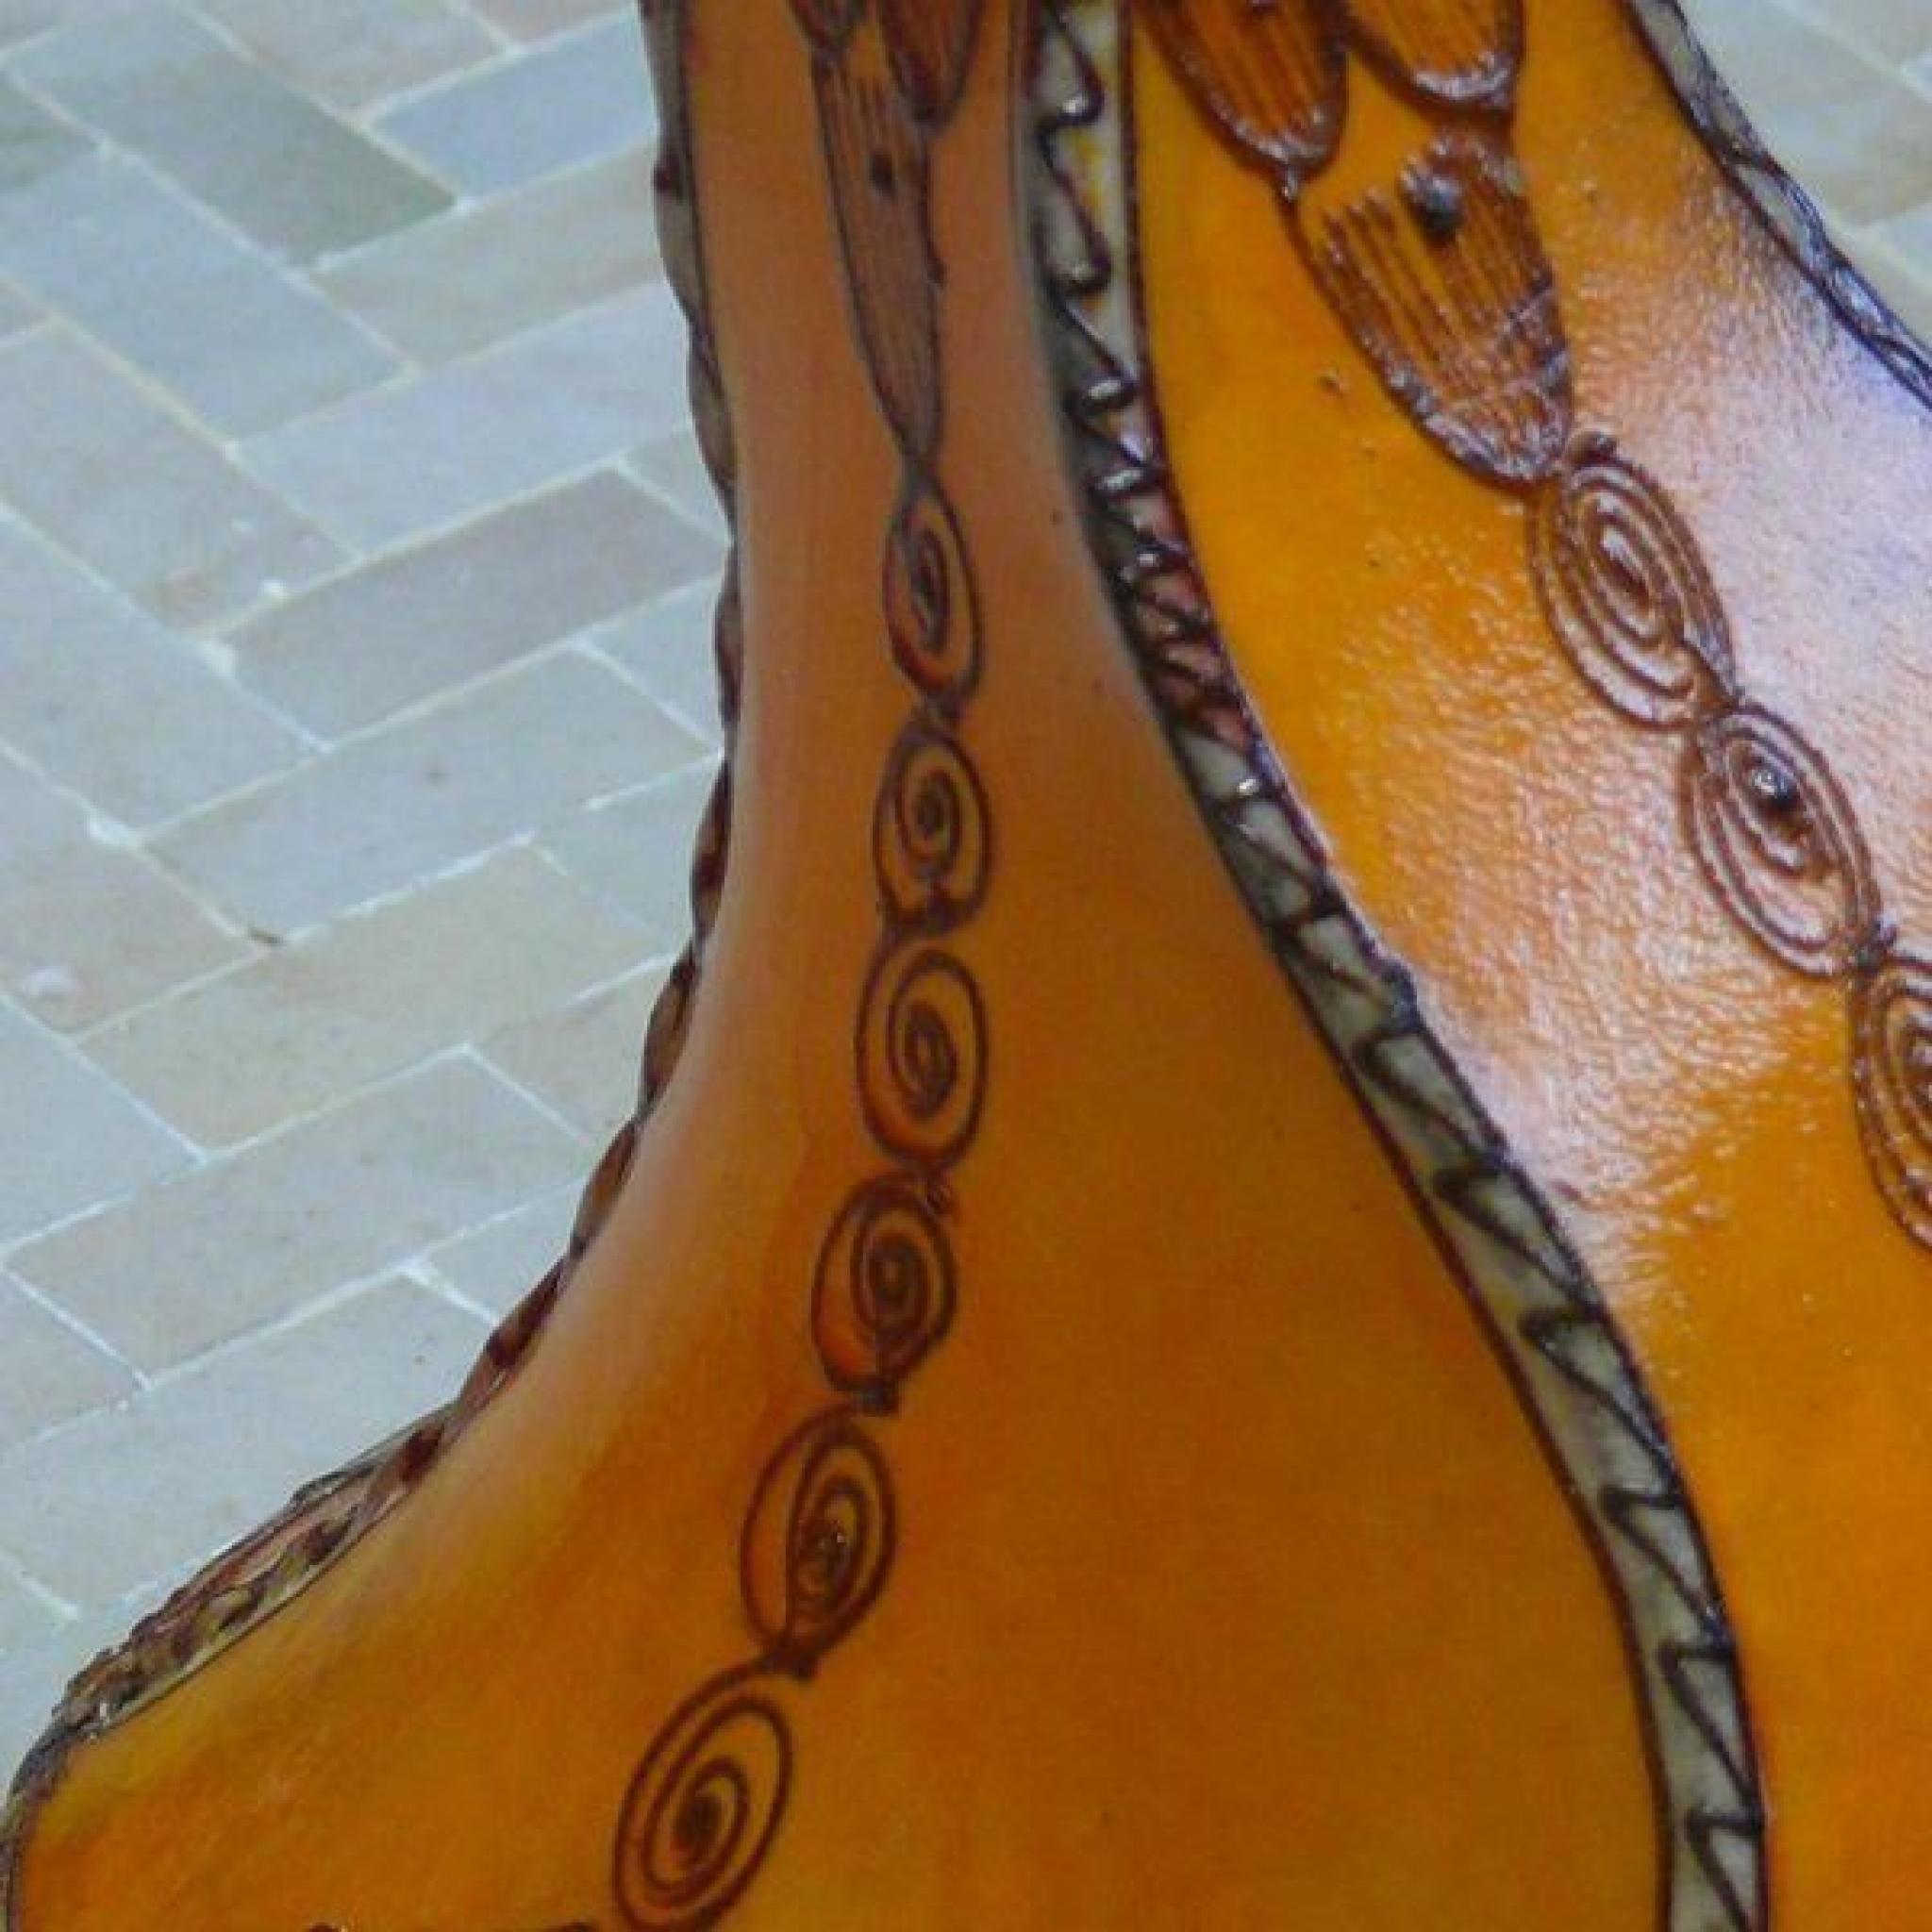 Henna Lampe de table Lampe en cuir 30 cm pas cher